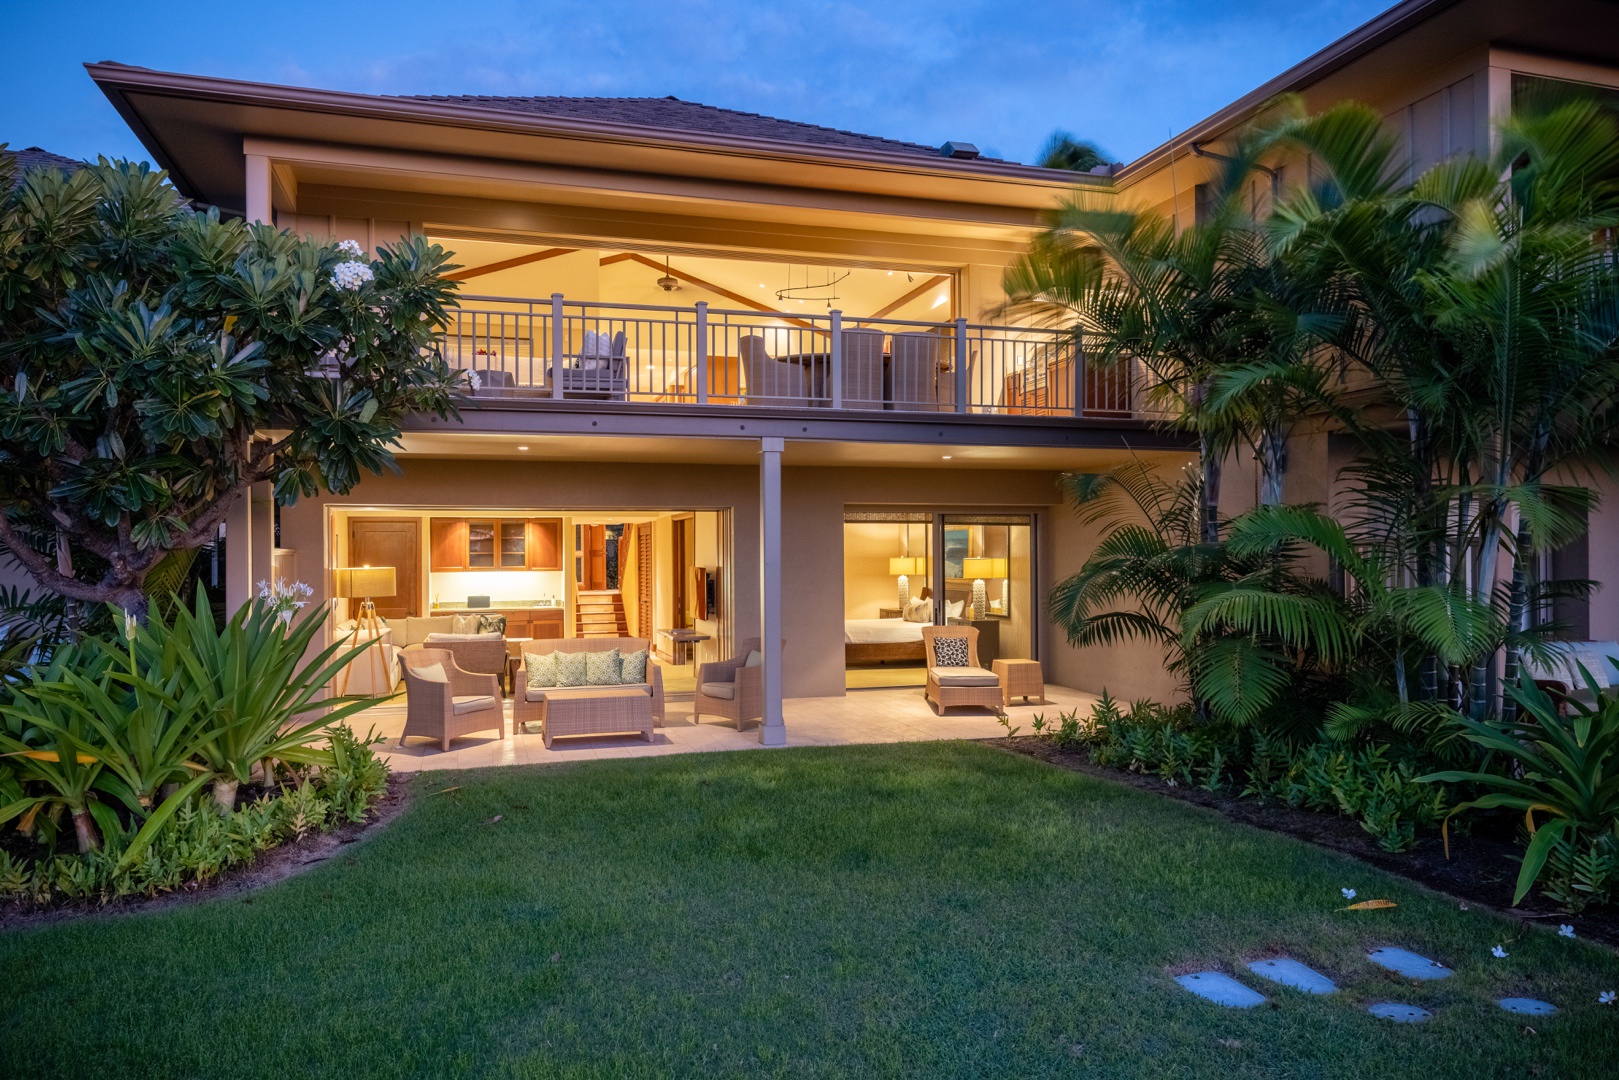 Kailua Kona Vacation Rentals, 3BD Ke Alaula Villa (210B) at Four Seasons Resort at Hualalai - Back of this spacious home at twilight, showcasing upper and lower decks and grassy lawn.